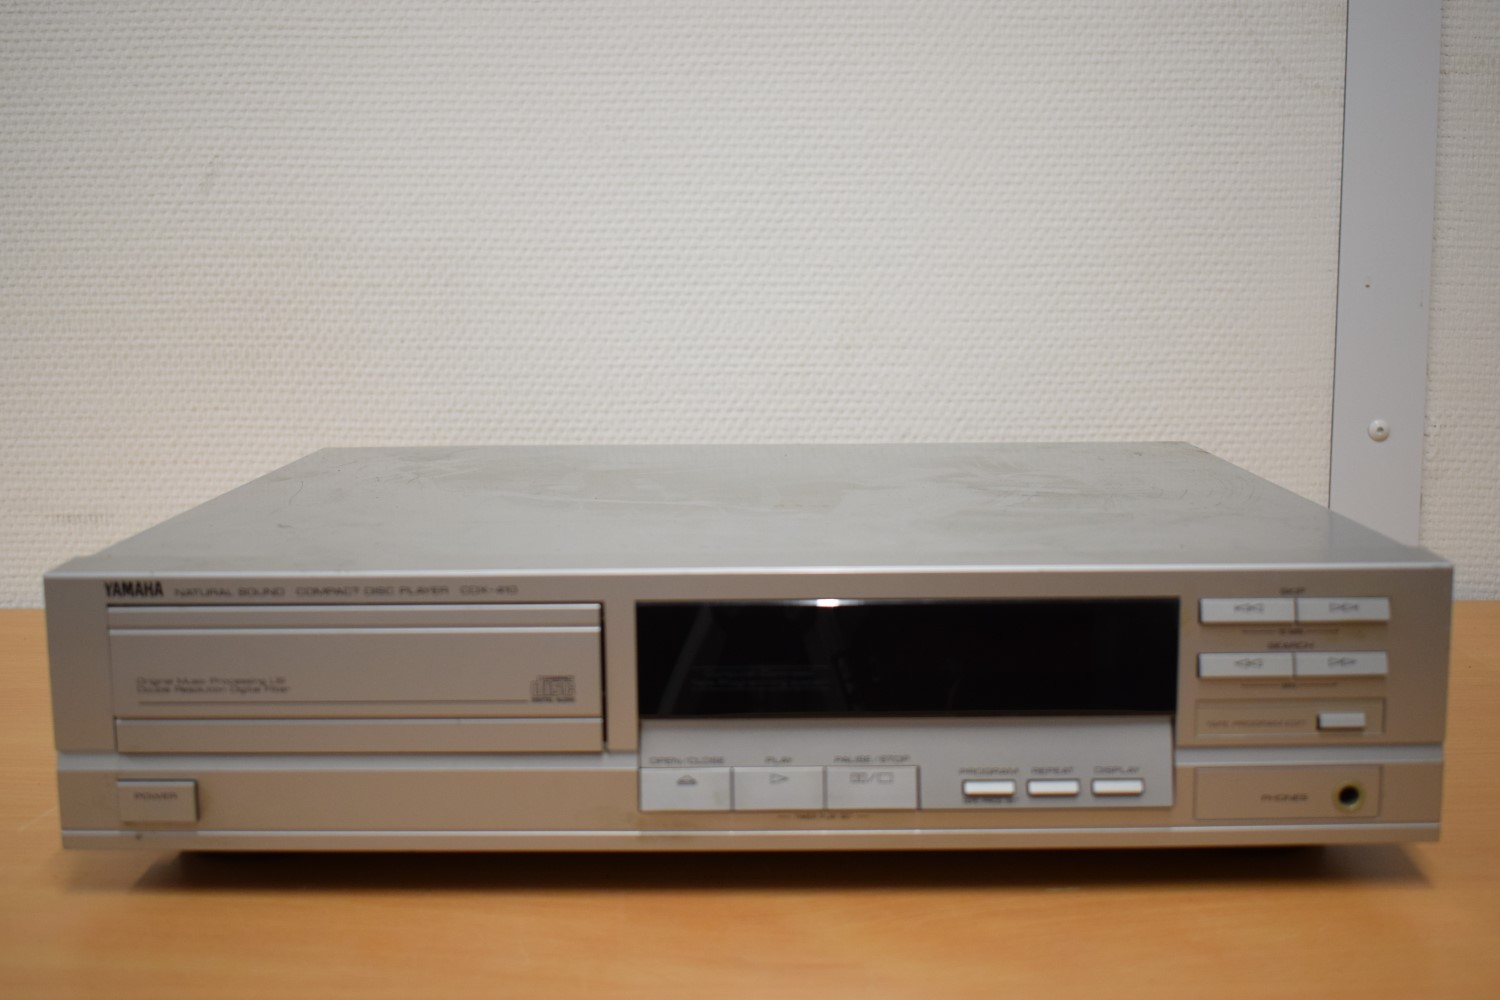 Yamaha CDX-410 CD-Spieler